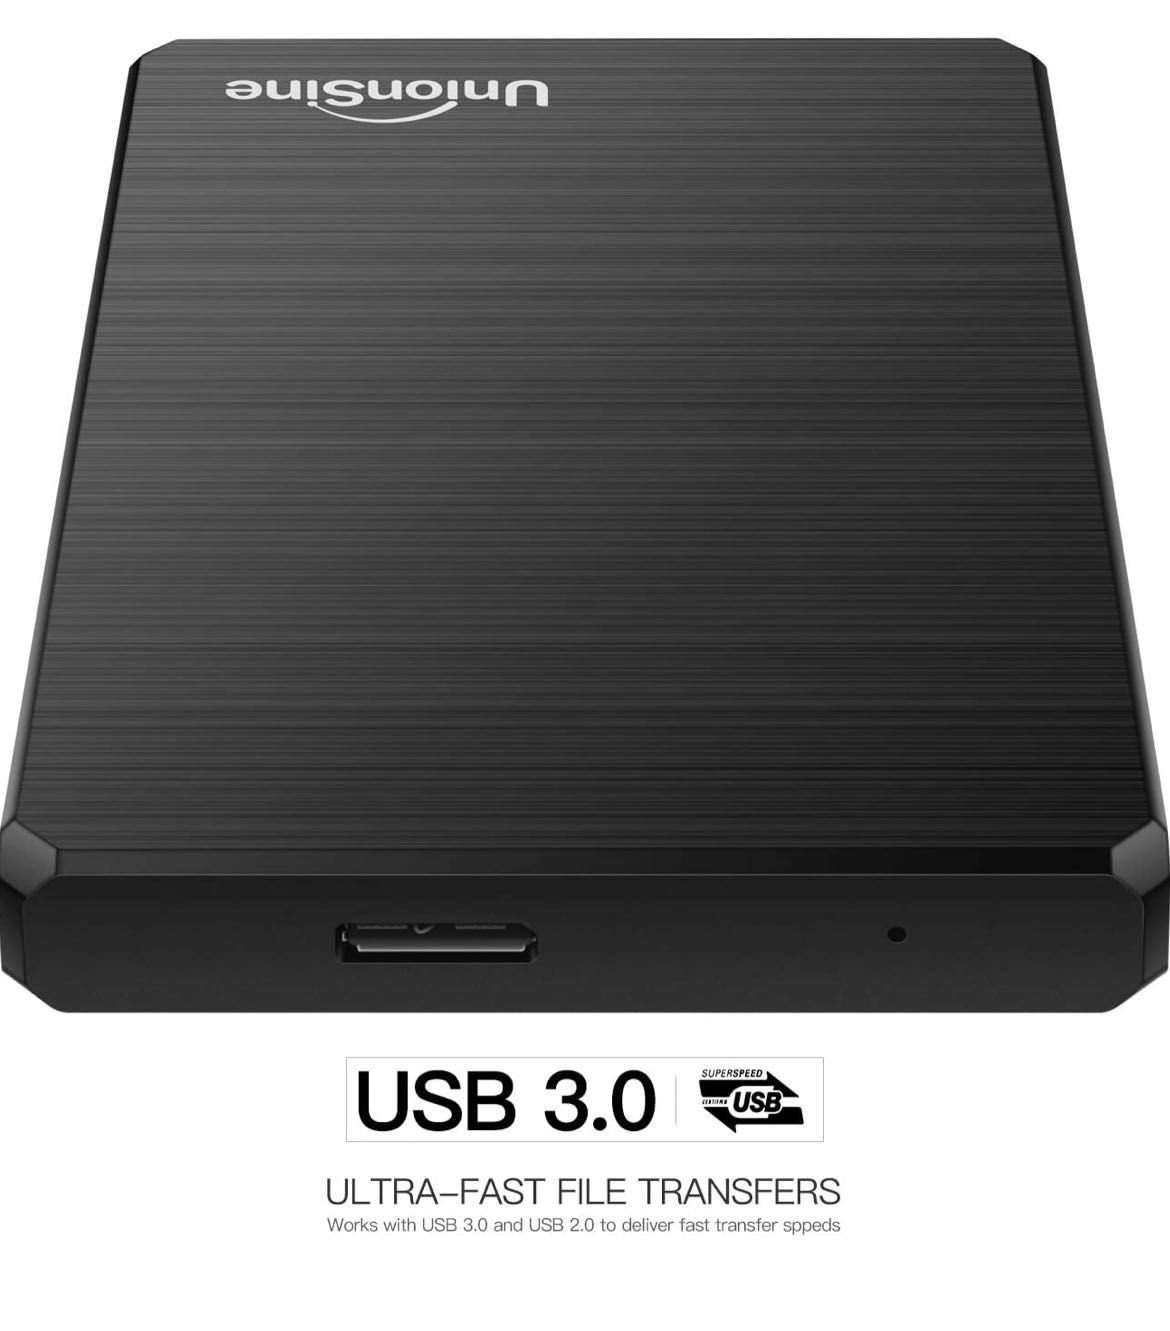 Hard extern Expansion Portabil 250Gb SLIM USB 3.0, Negru NOU Sigilat